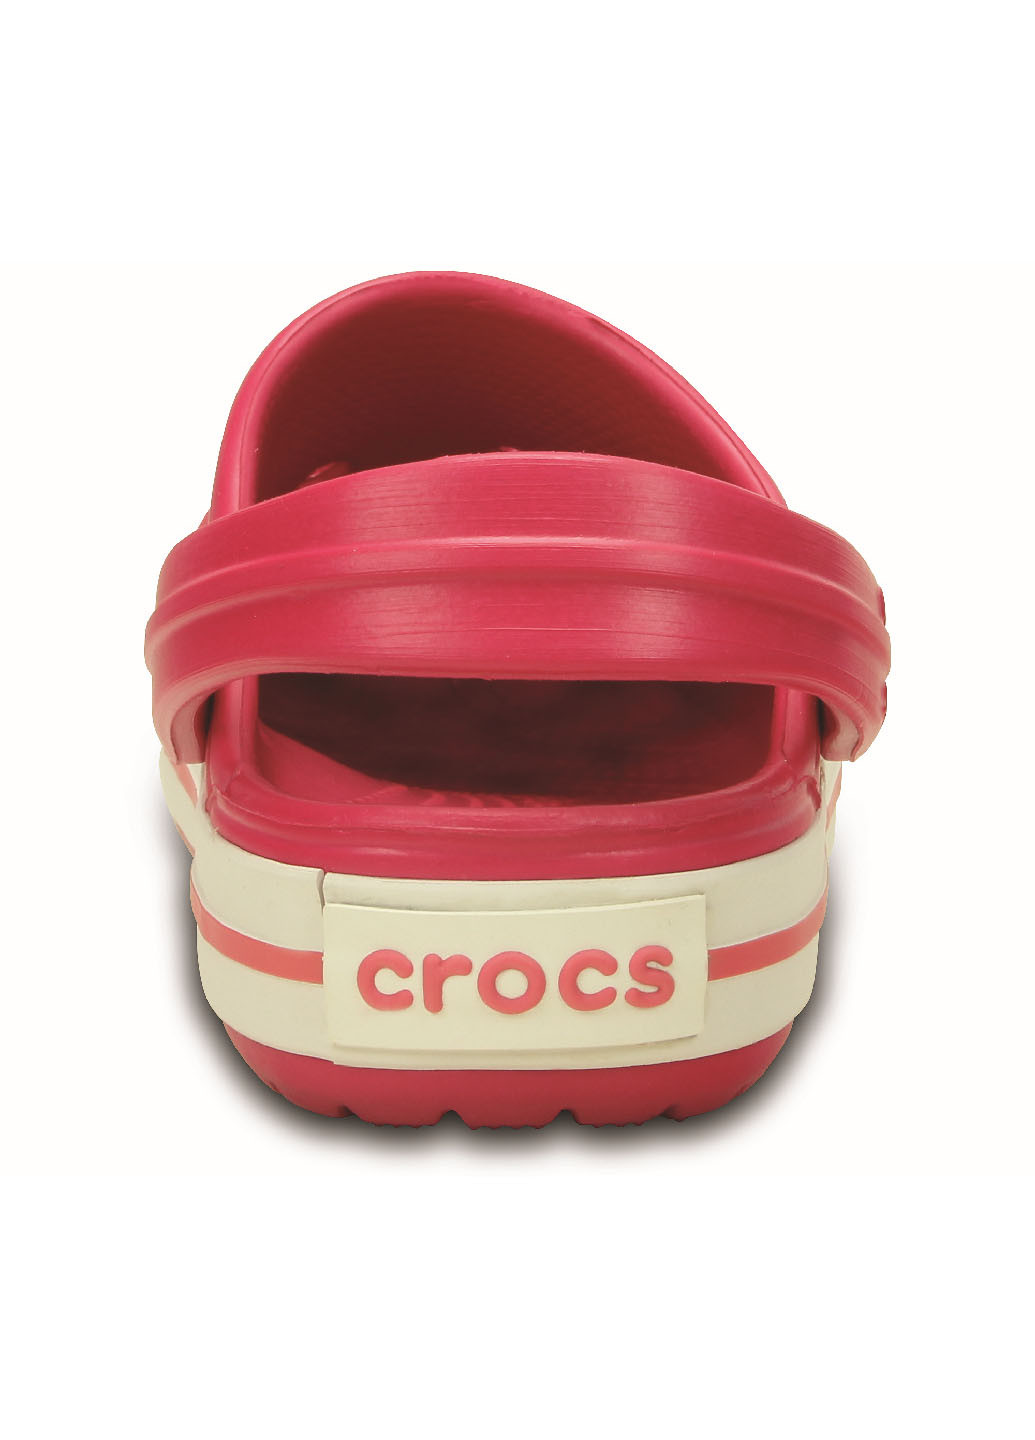 Малиновые детские сабо Crocs